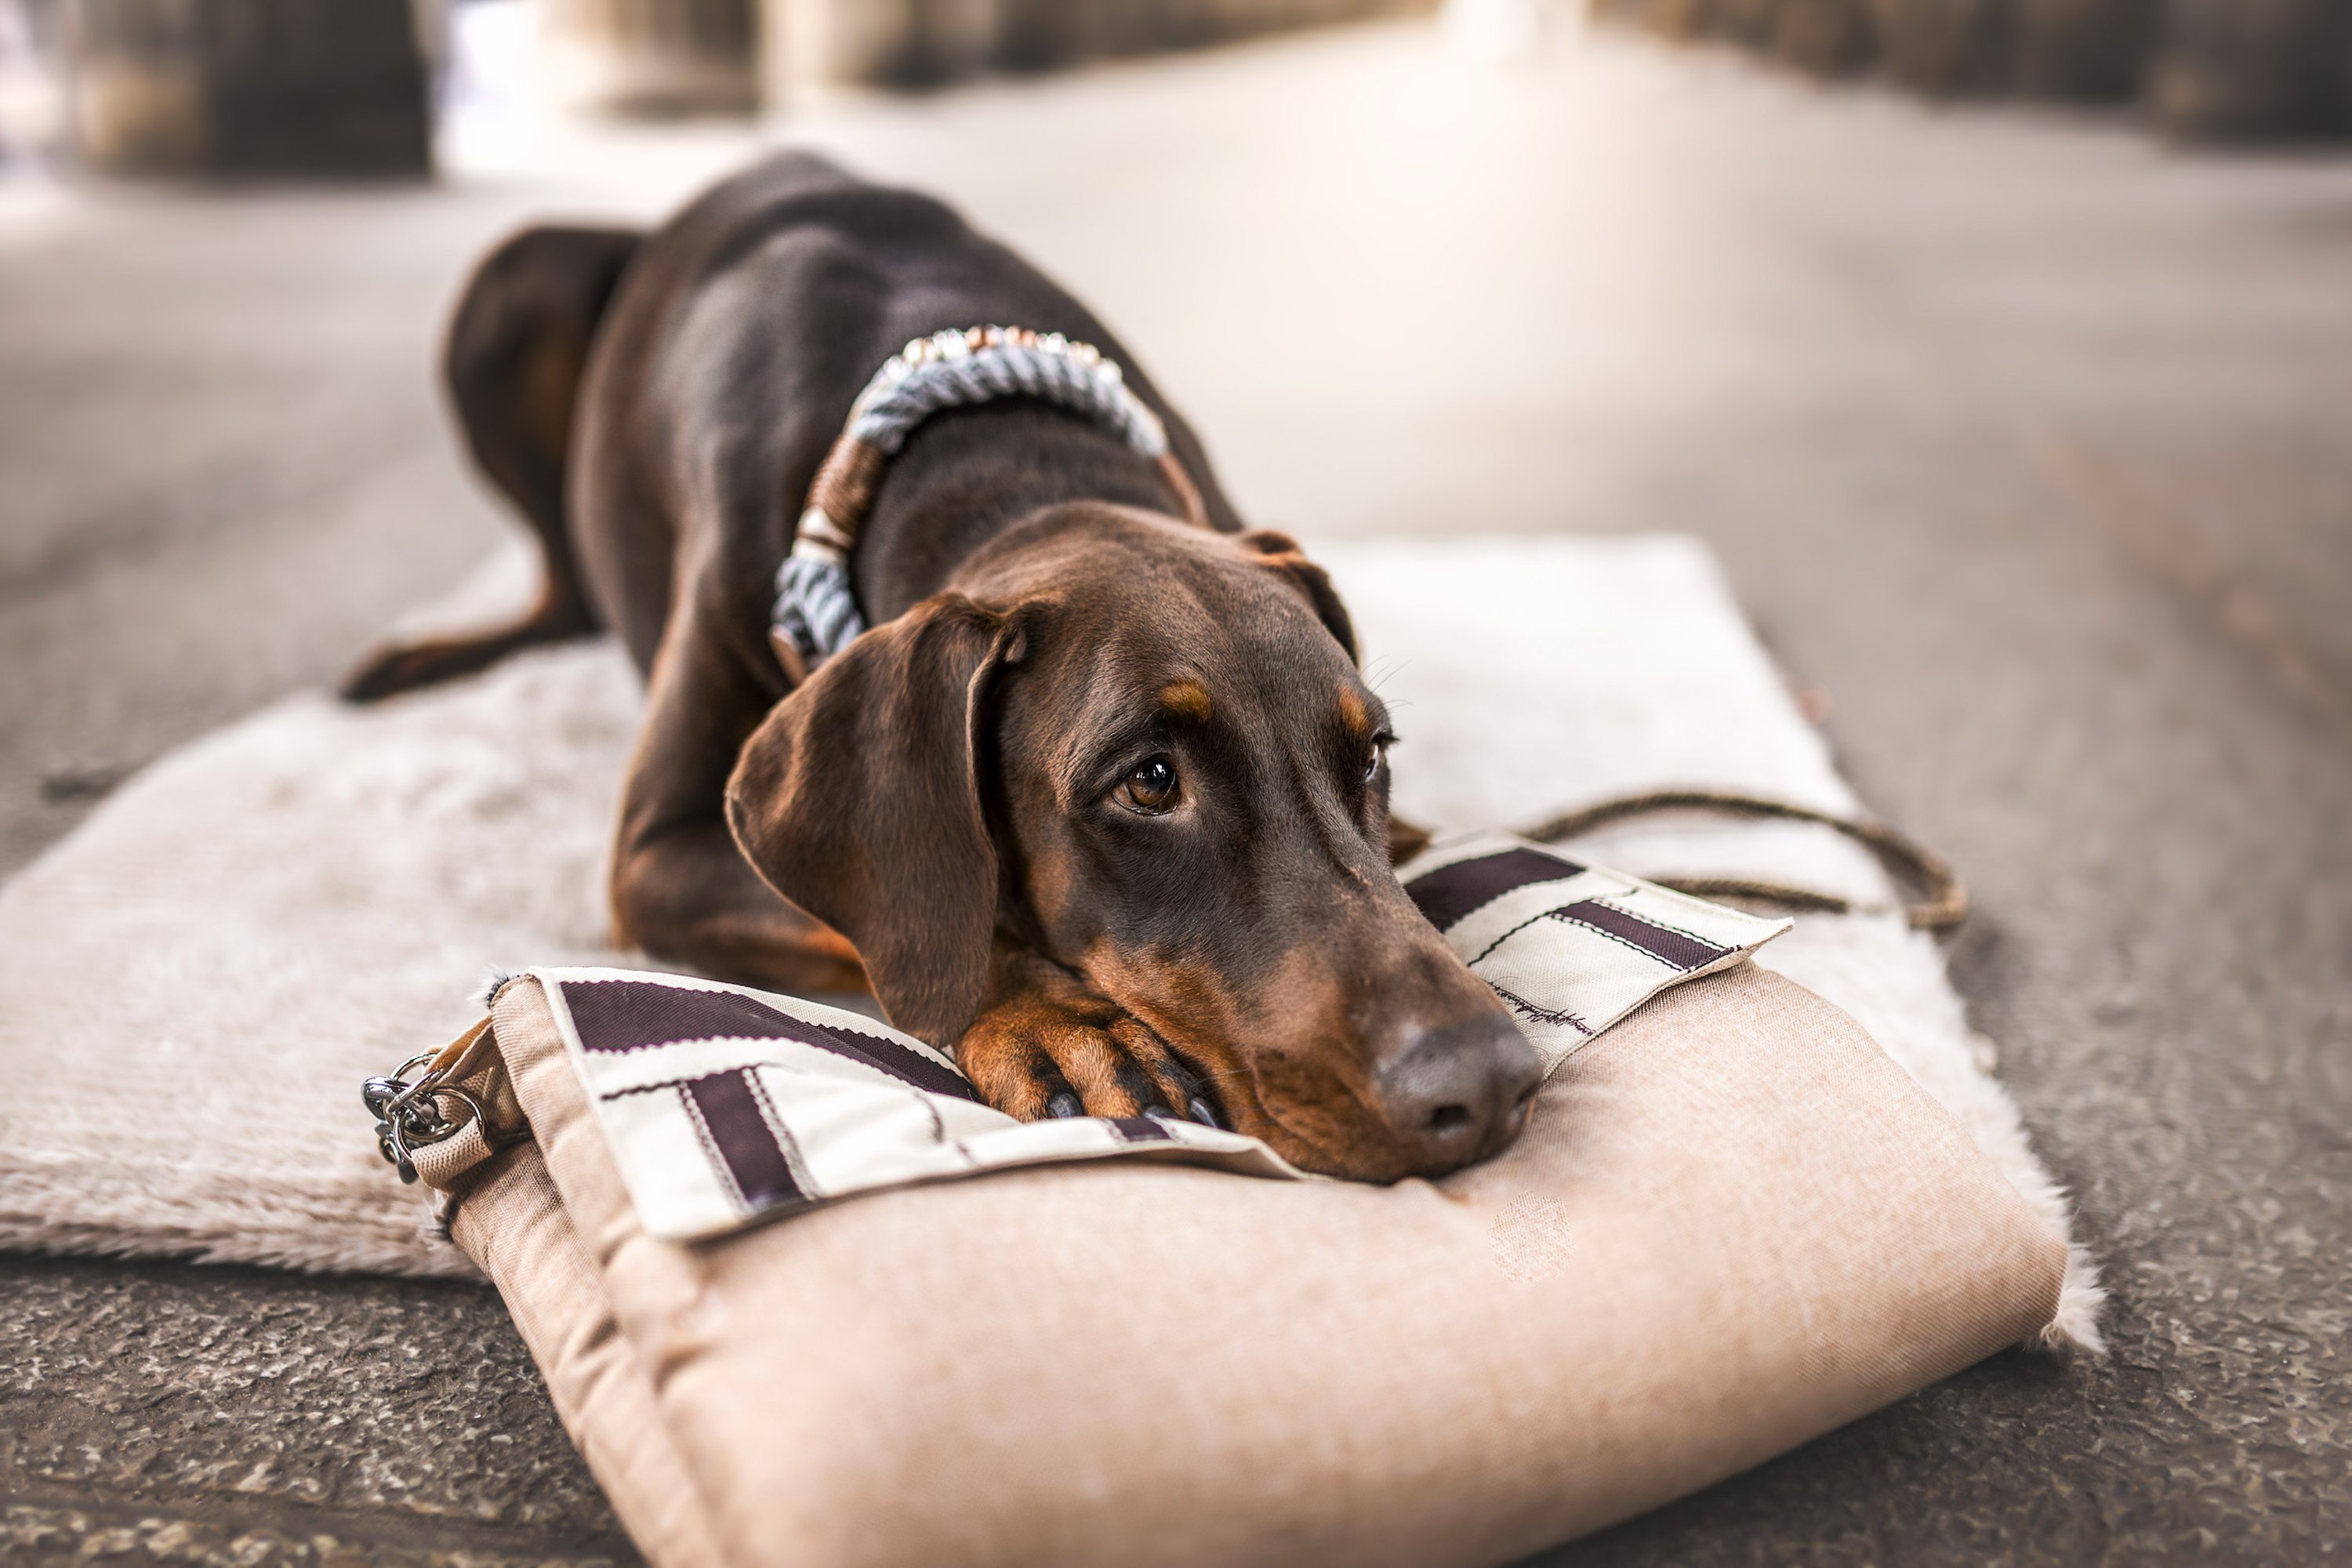 Brauner Hund mit Tauhalsband liegt auf Hundedecke von Reiserucksack